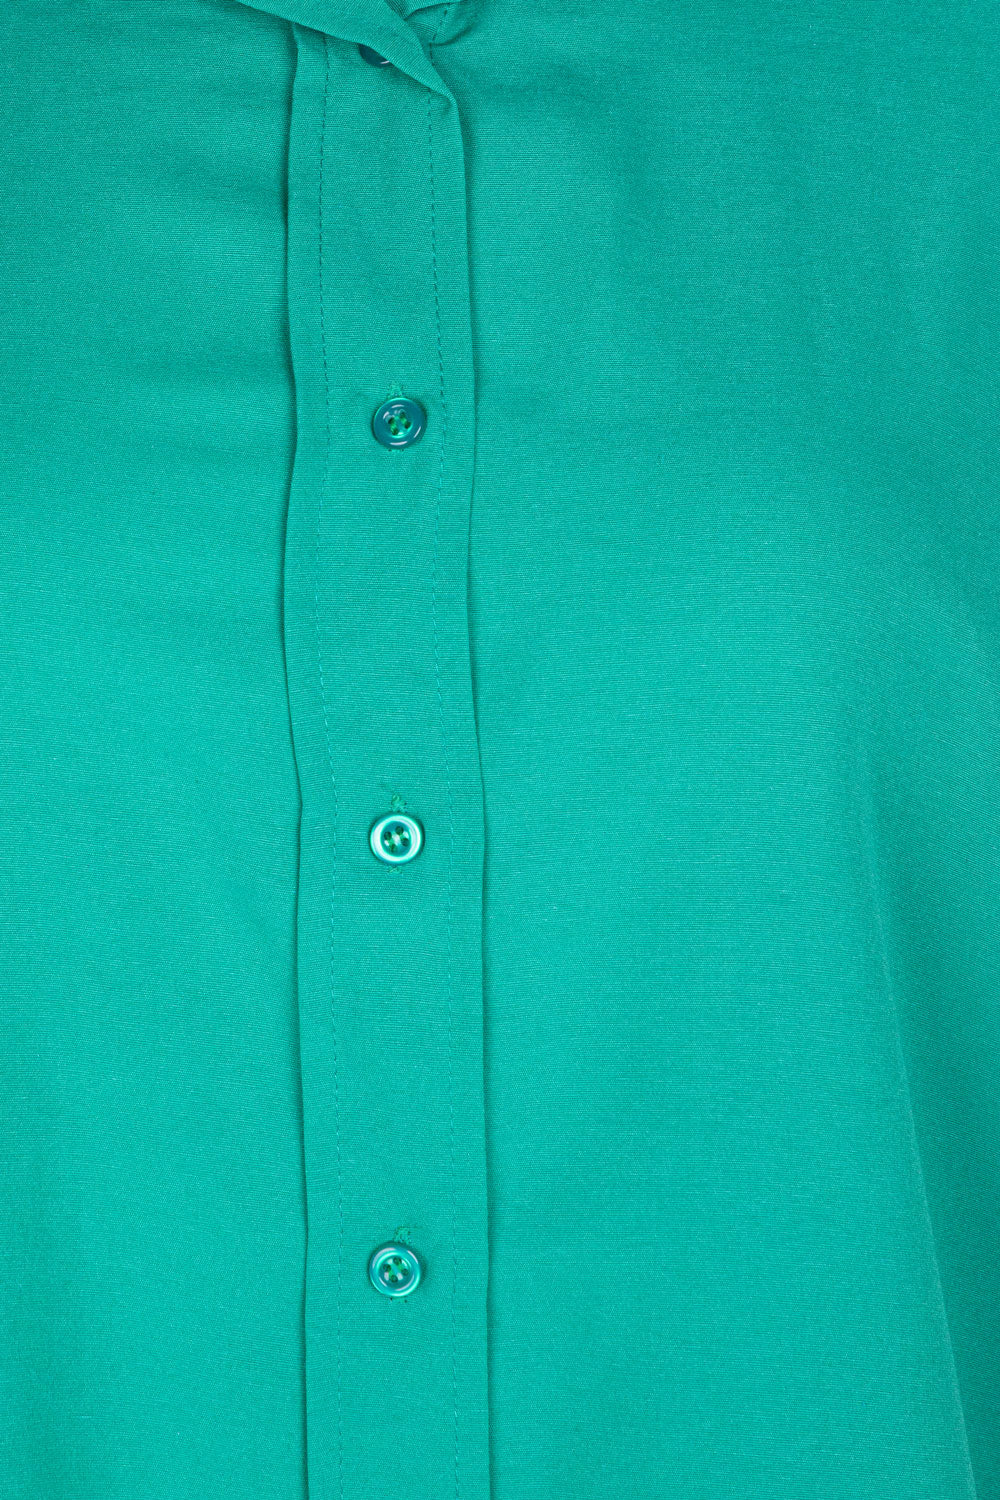 Oversize Solid Shirt Light Green